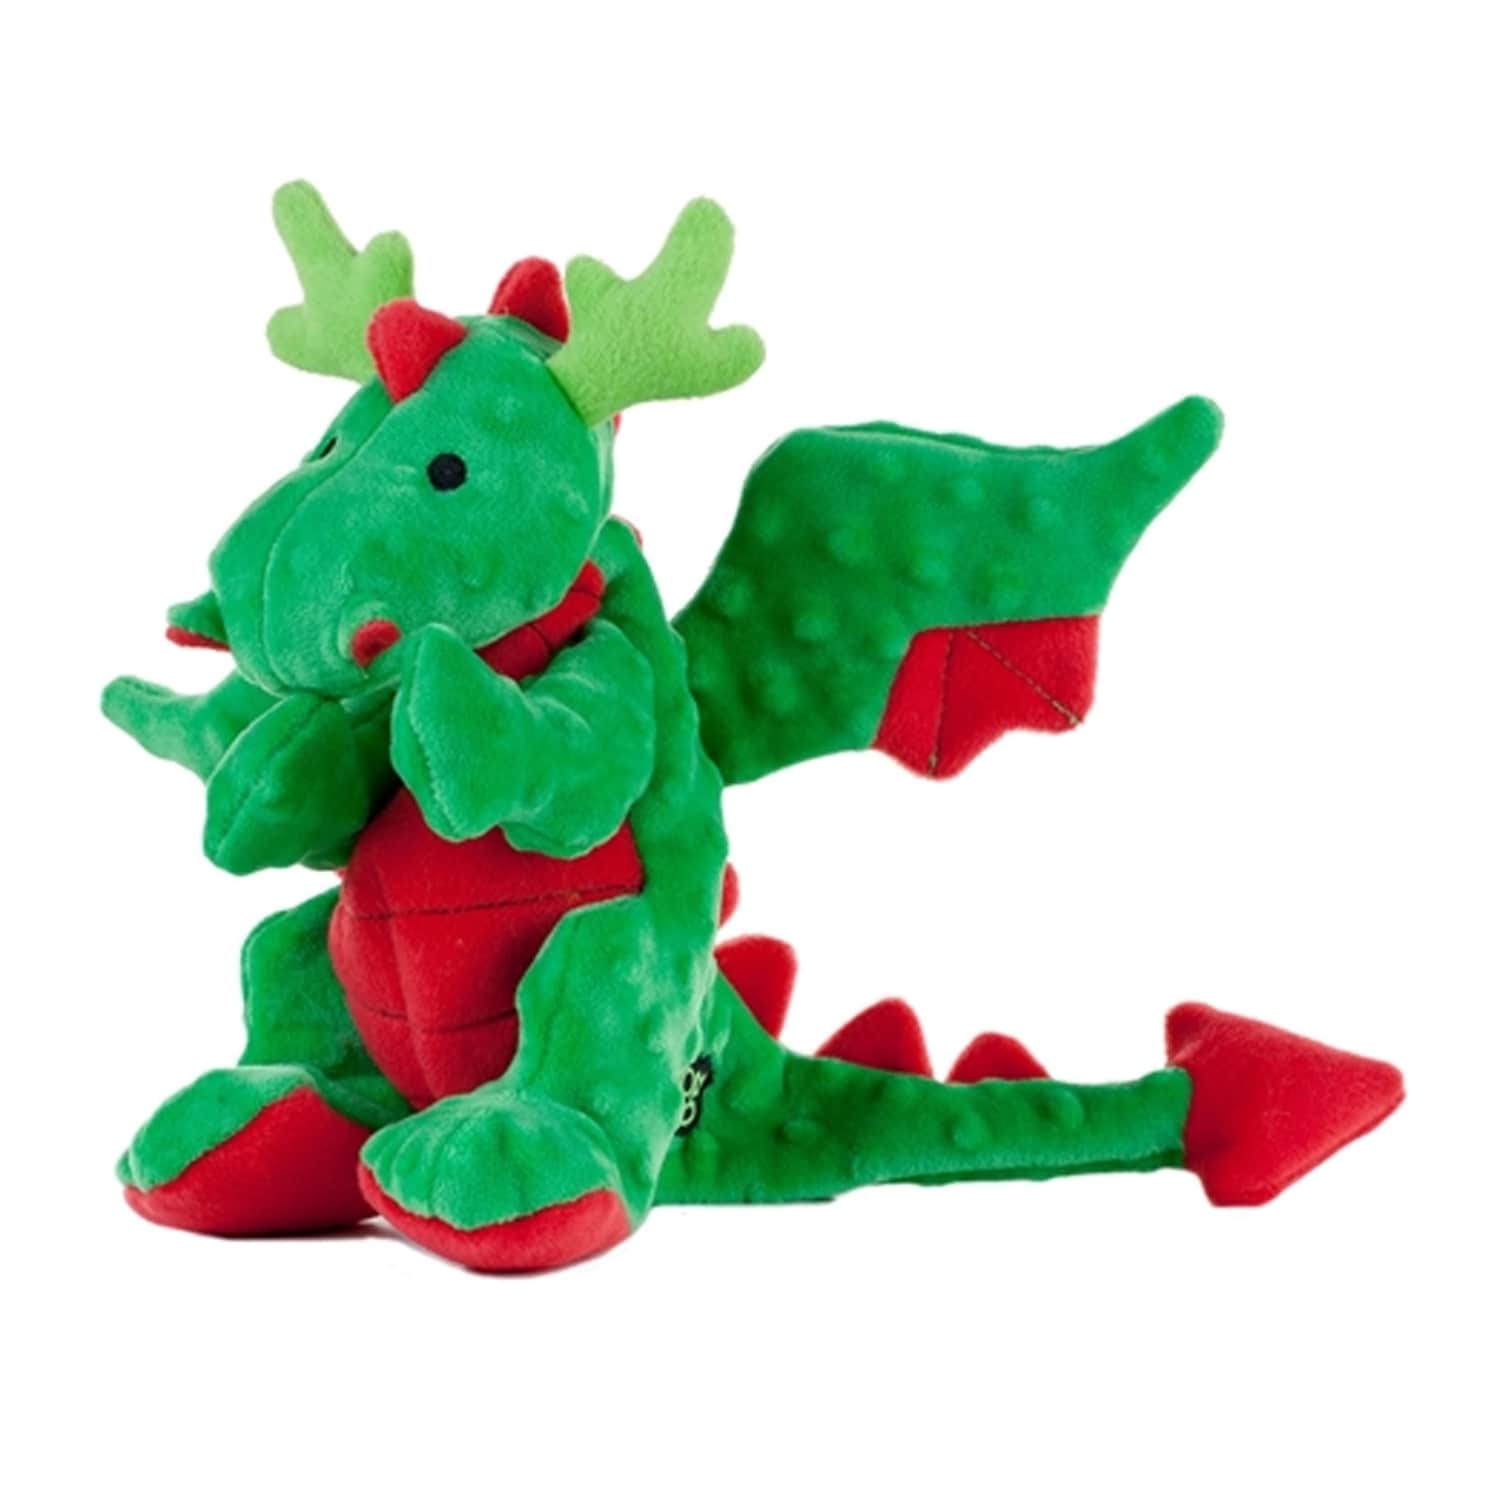 dragon dog toy